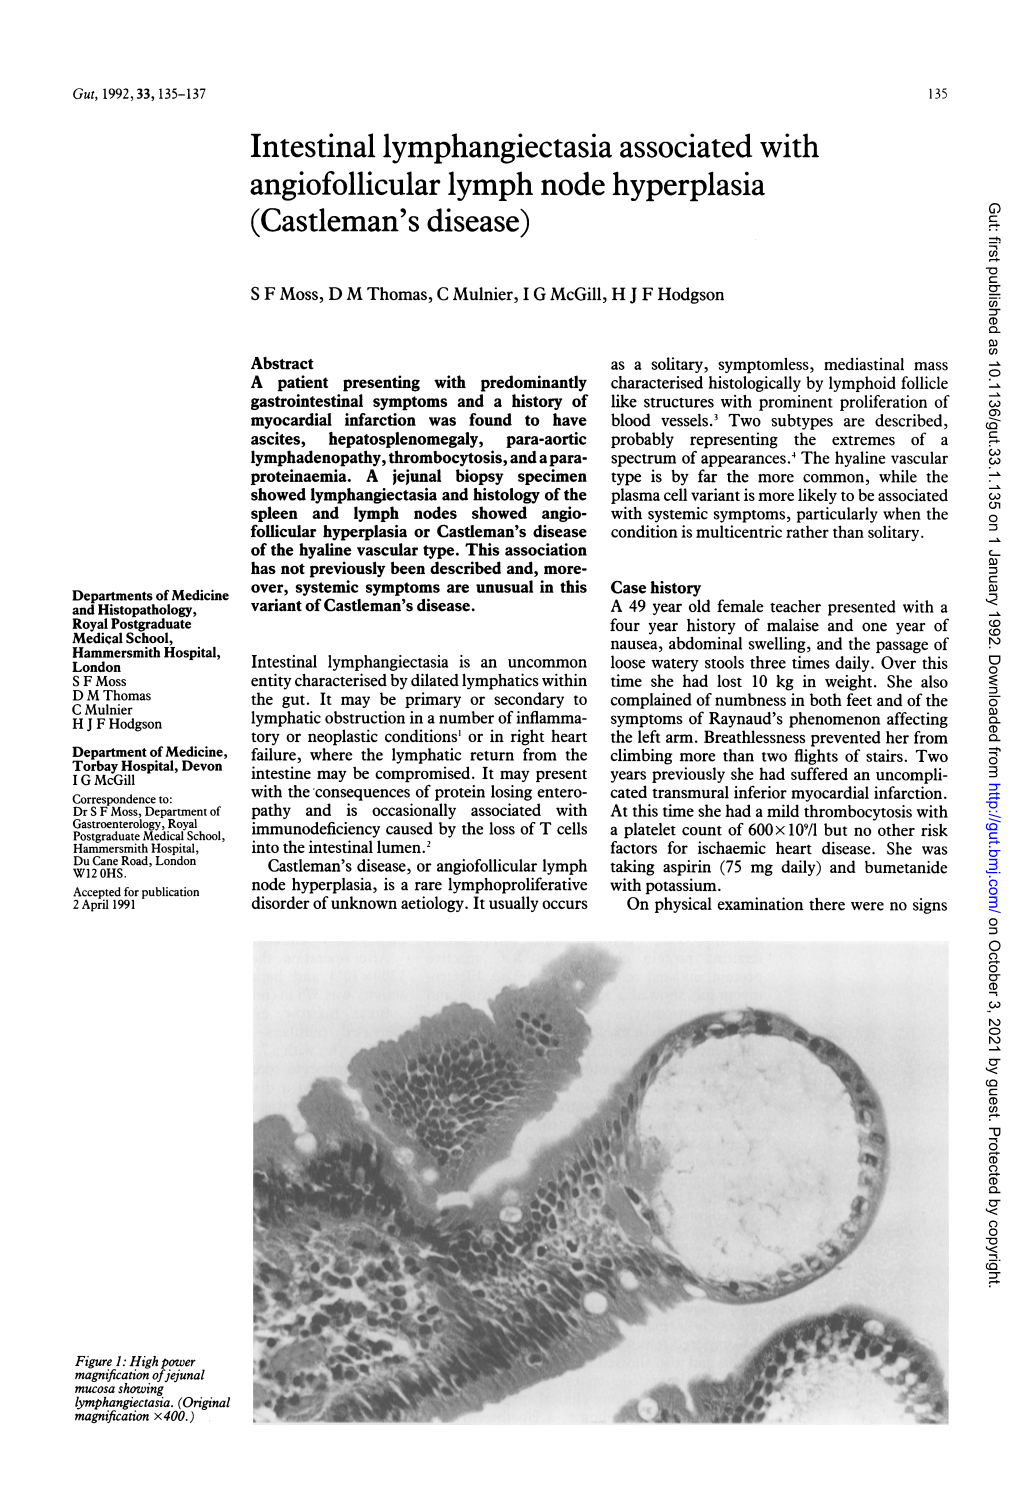 Intestinal Lymphangiectasia Associated with (Castleman's